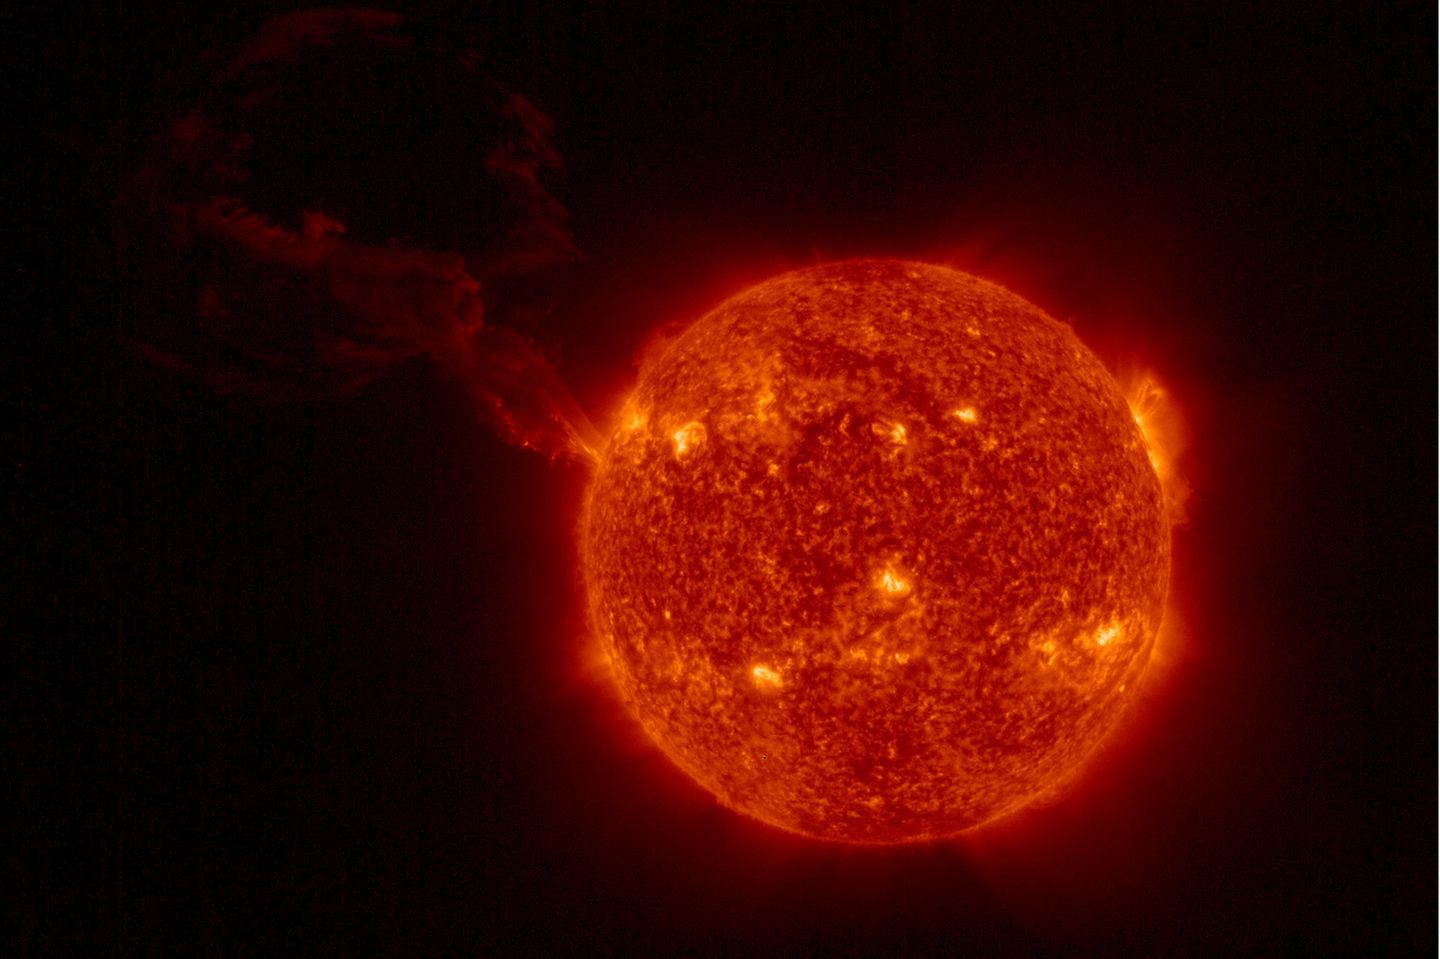 Die ESA-Sonde "Solar Orbiter" lieferte im Februar 2022 Bilder einer riesigen Sonneneruption - laut ESA die größte derartige Eruption, die jemals fotografiert wurde